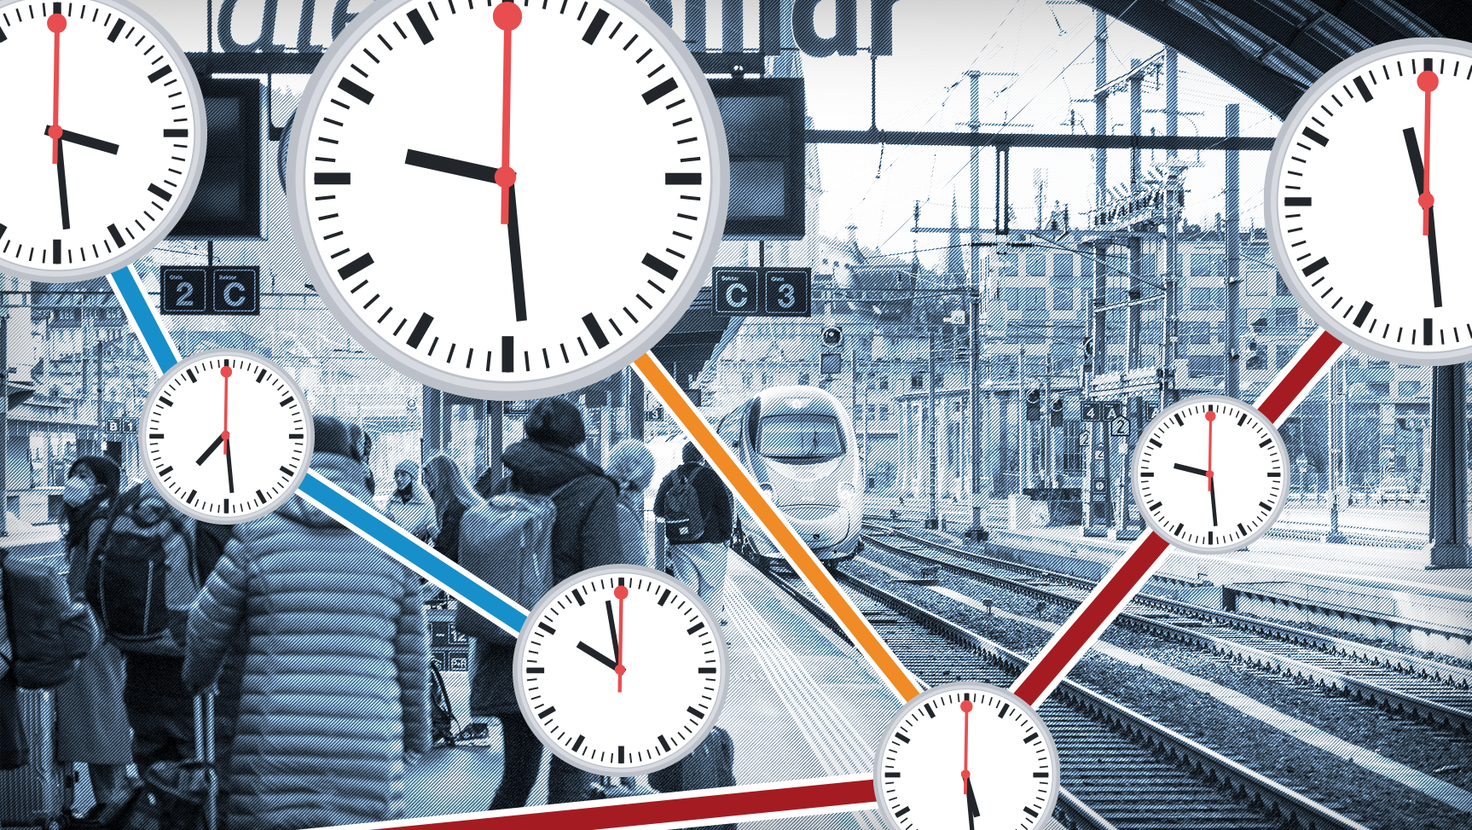 Das Schweizer Zugnetz ist zuverlässig, aber nicht auf allen Strecken sind die Züge gleich pünktlich. (Bild: Donato Caspari / Grafik: Martin Ludwig)